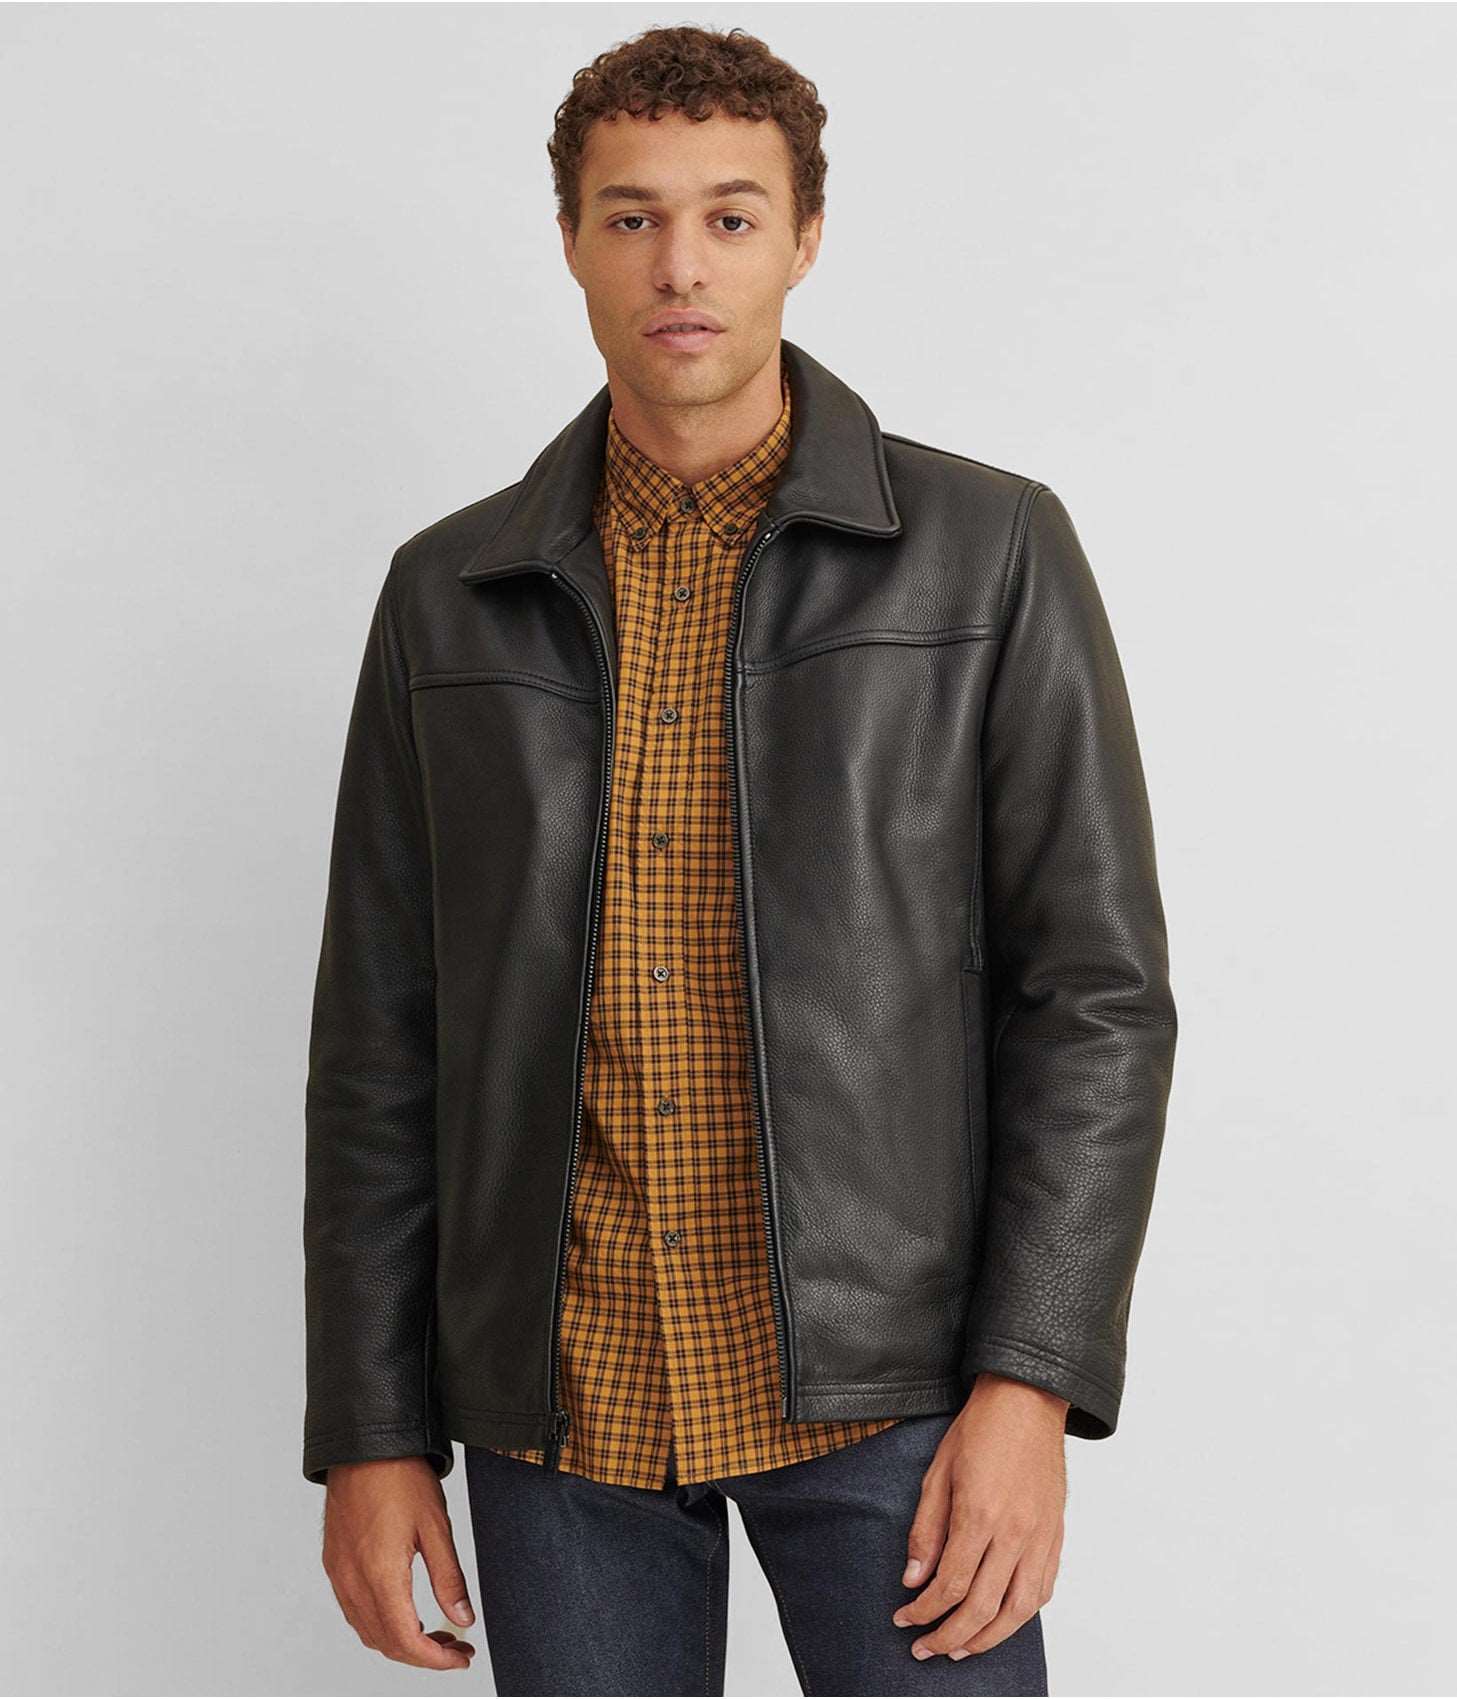 Men's Leather Jacket Black